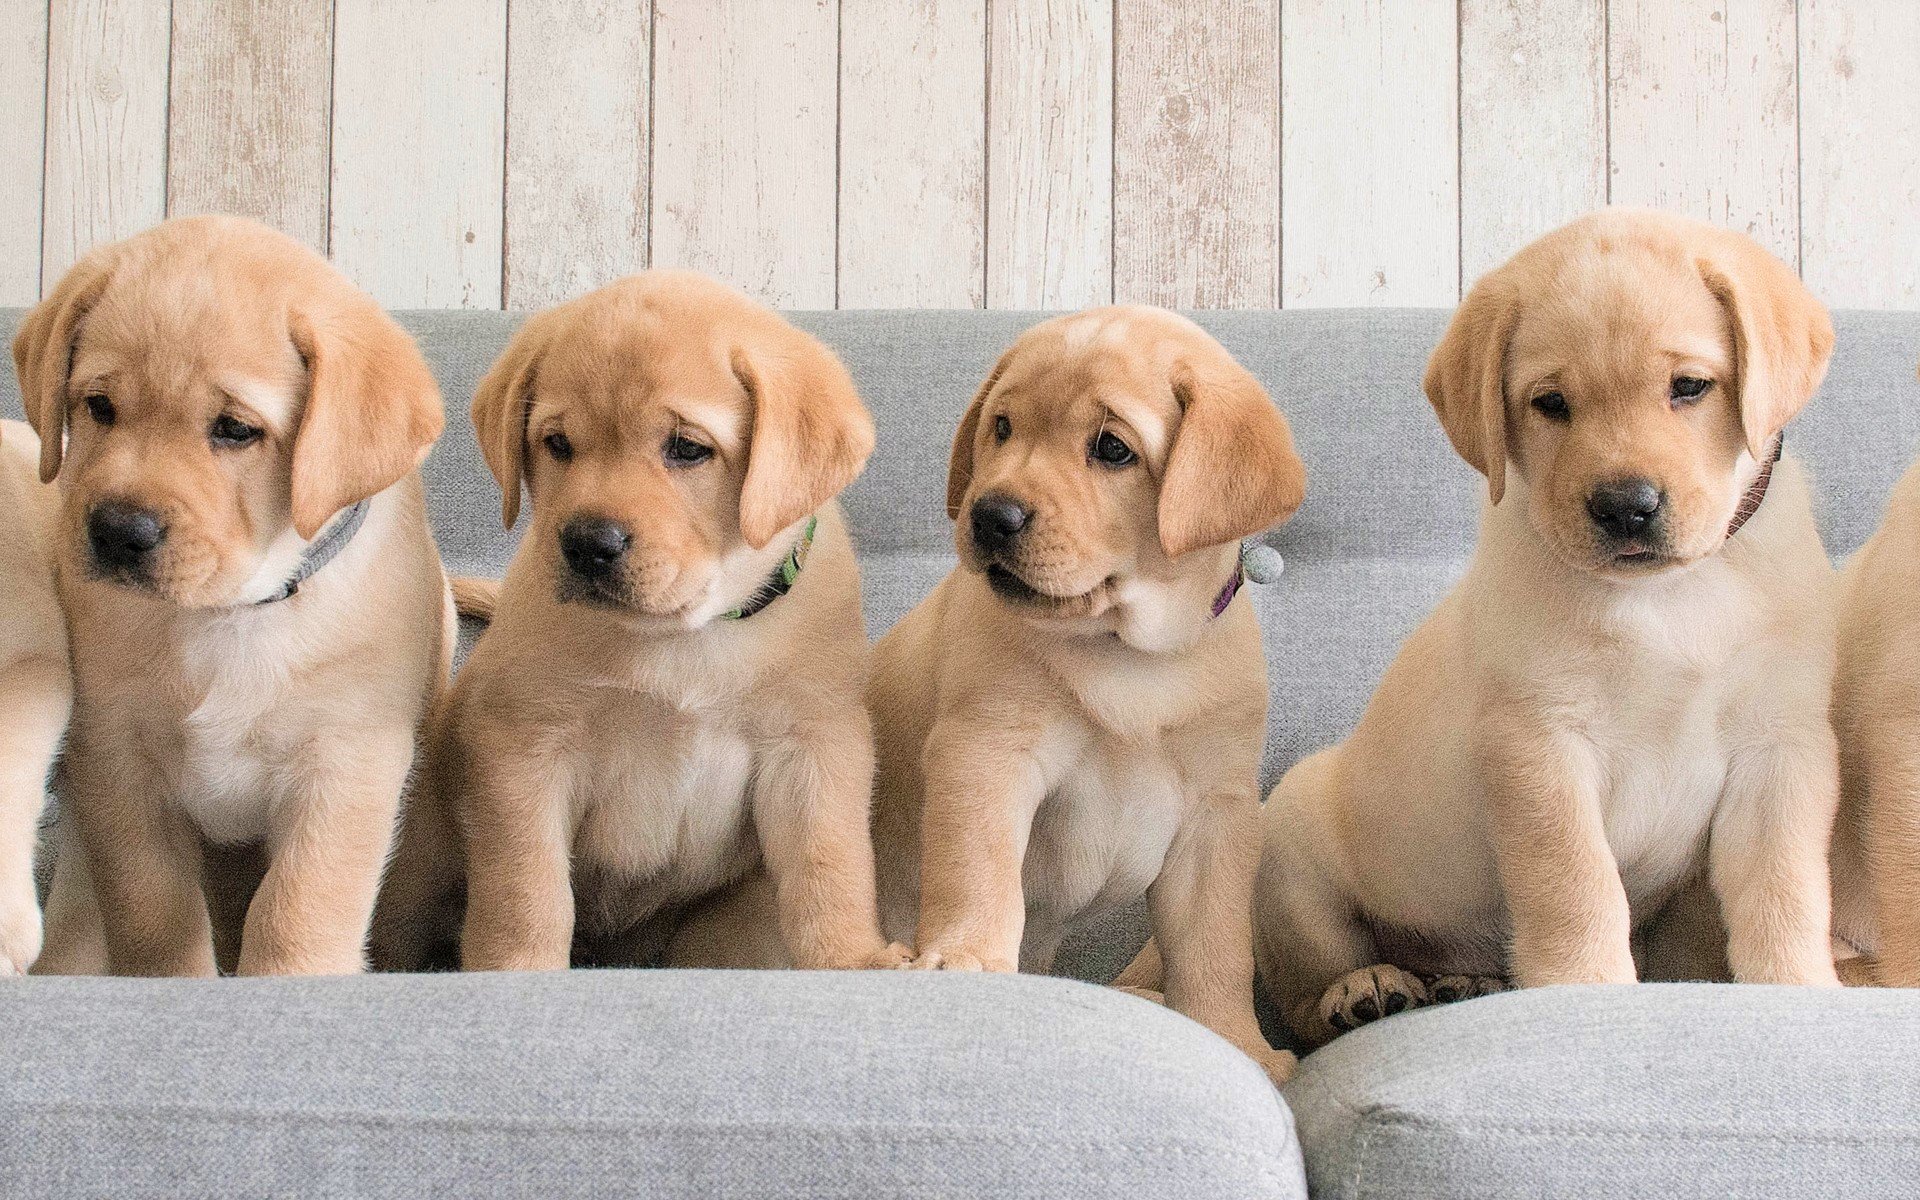 ダウンロード画像 ゴールデンレトリーバー犬 子犬 ラブラドール 犬 家族 ペット かわいい動物たち ゴールデンレトリーバー 画面の解像度 19x10 壁紙デスクトップ上